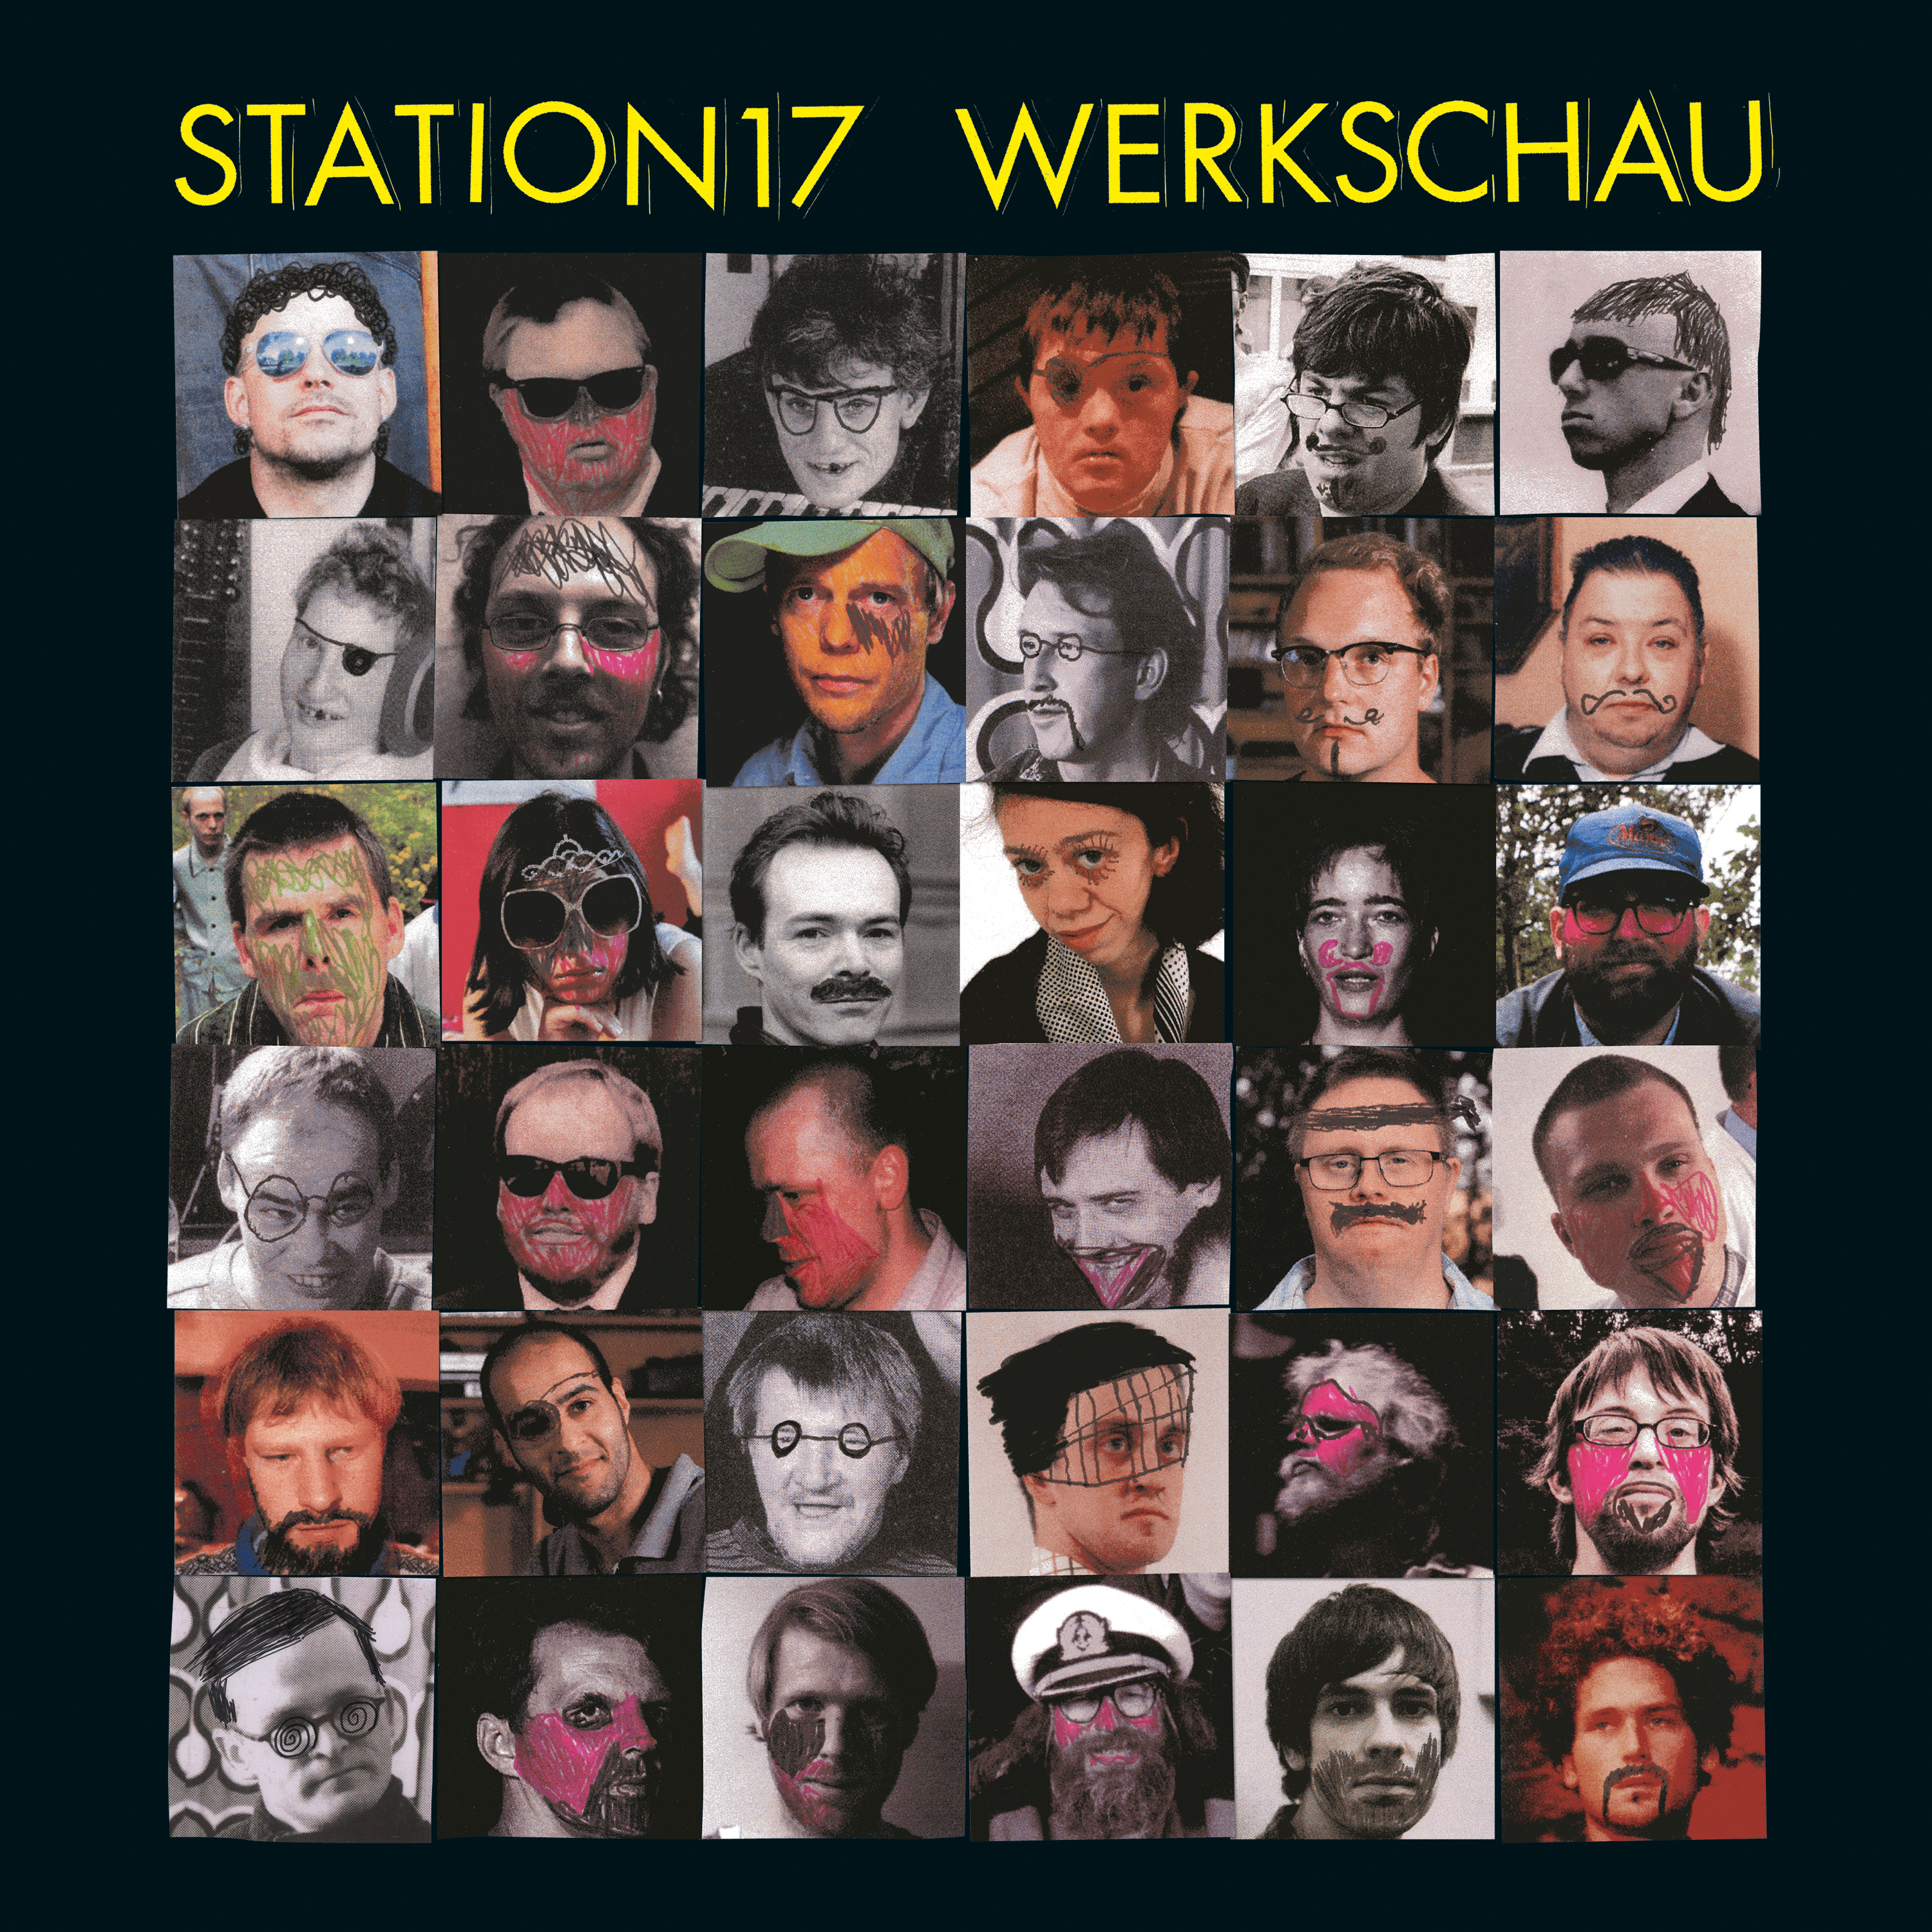 Station 17 - Werkschau